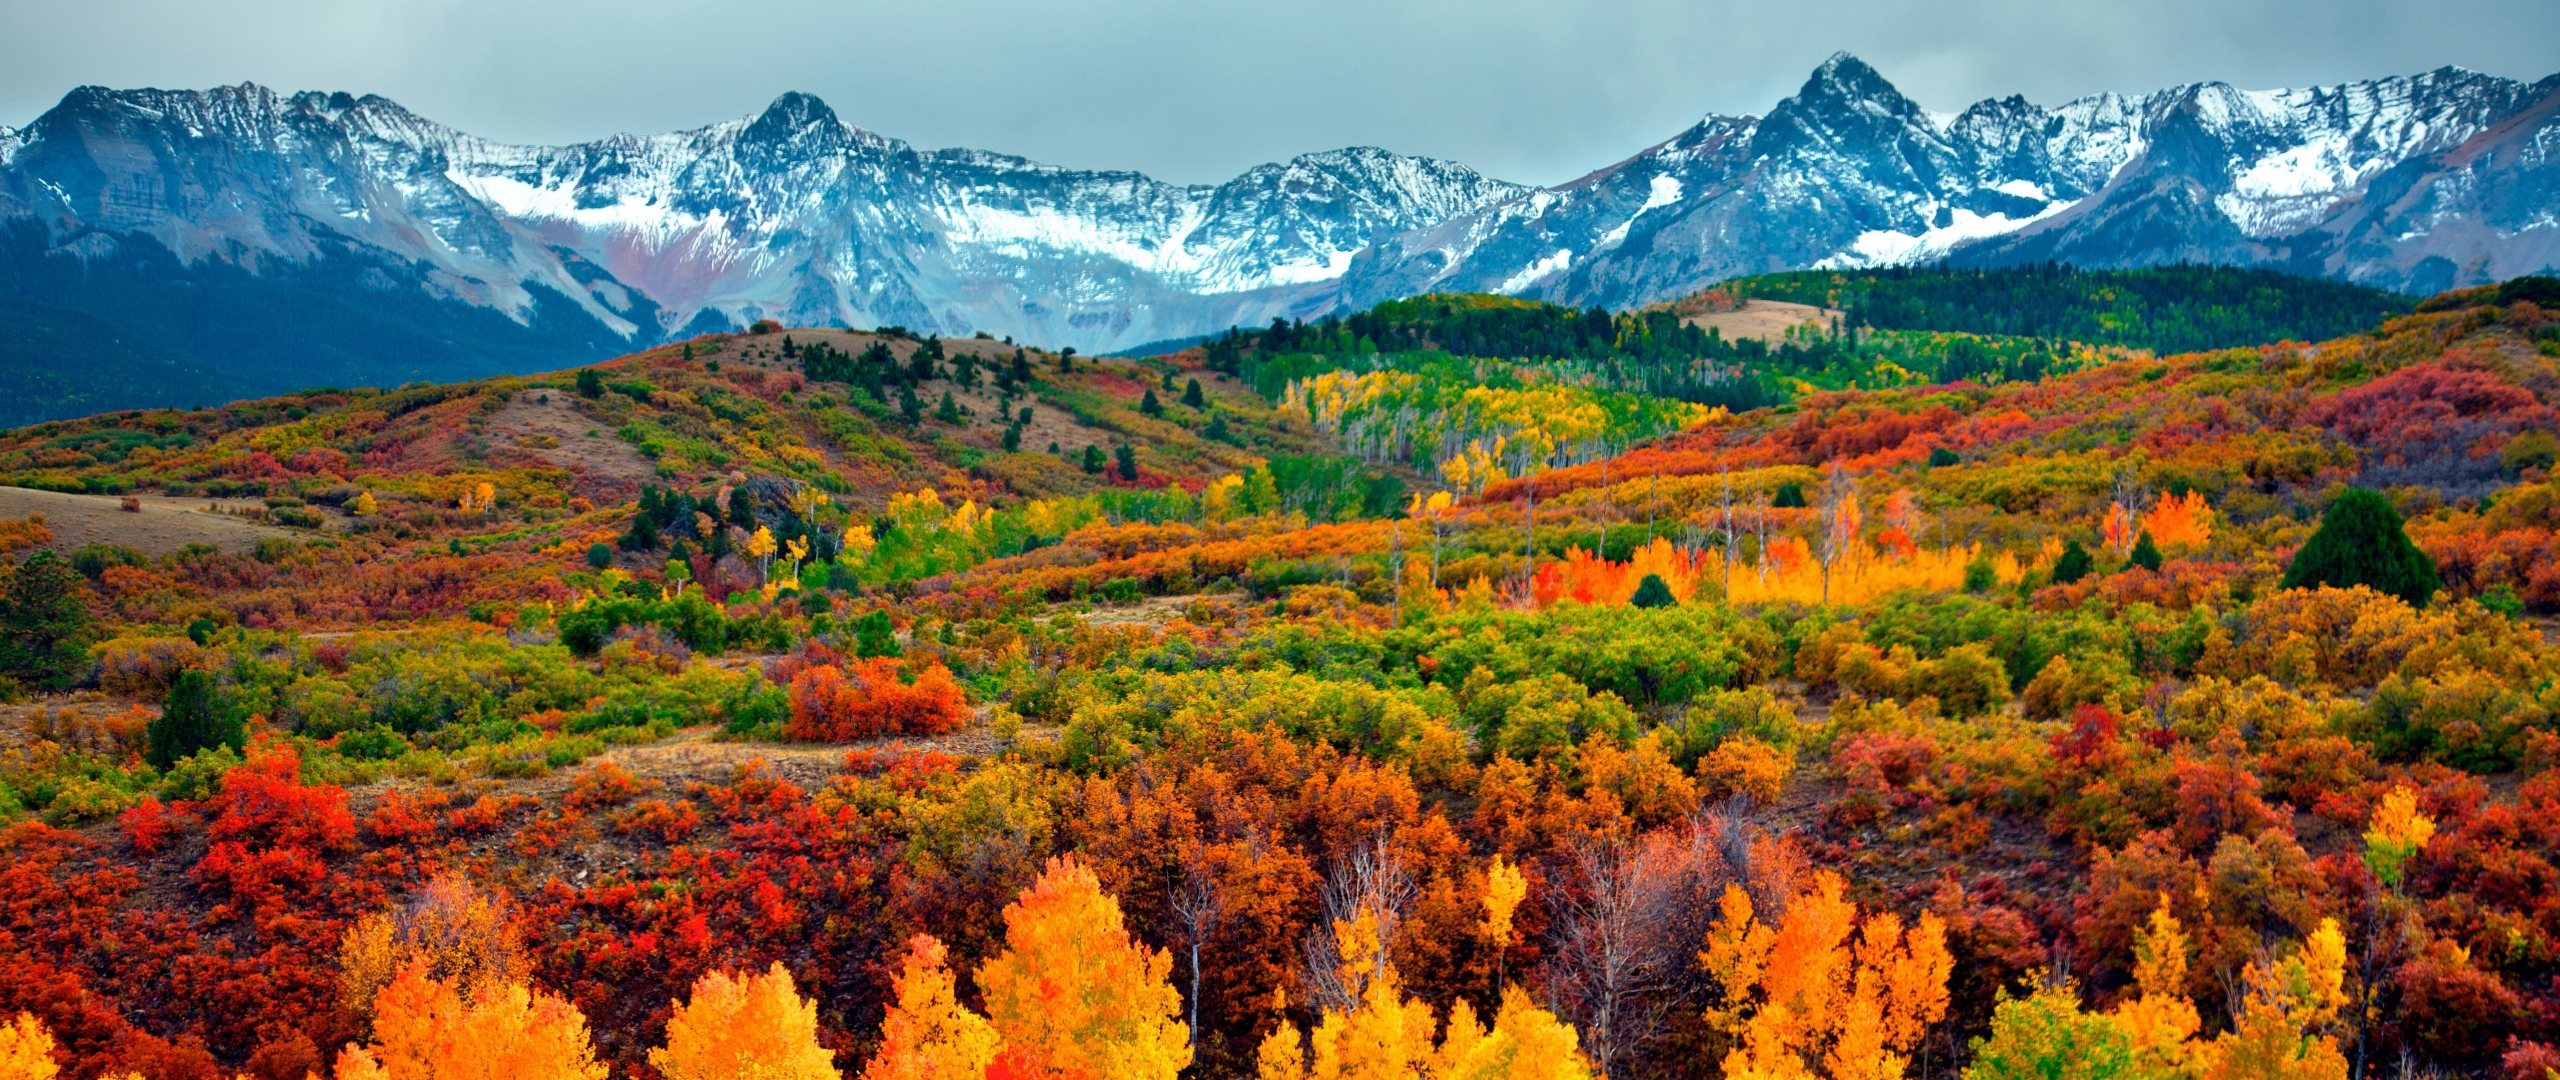 Colorado Fall Colors 2018 2560x1080 Wallpaper teahub.io